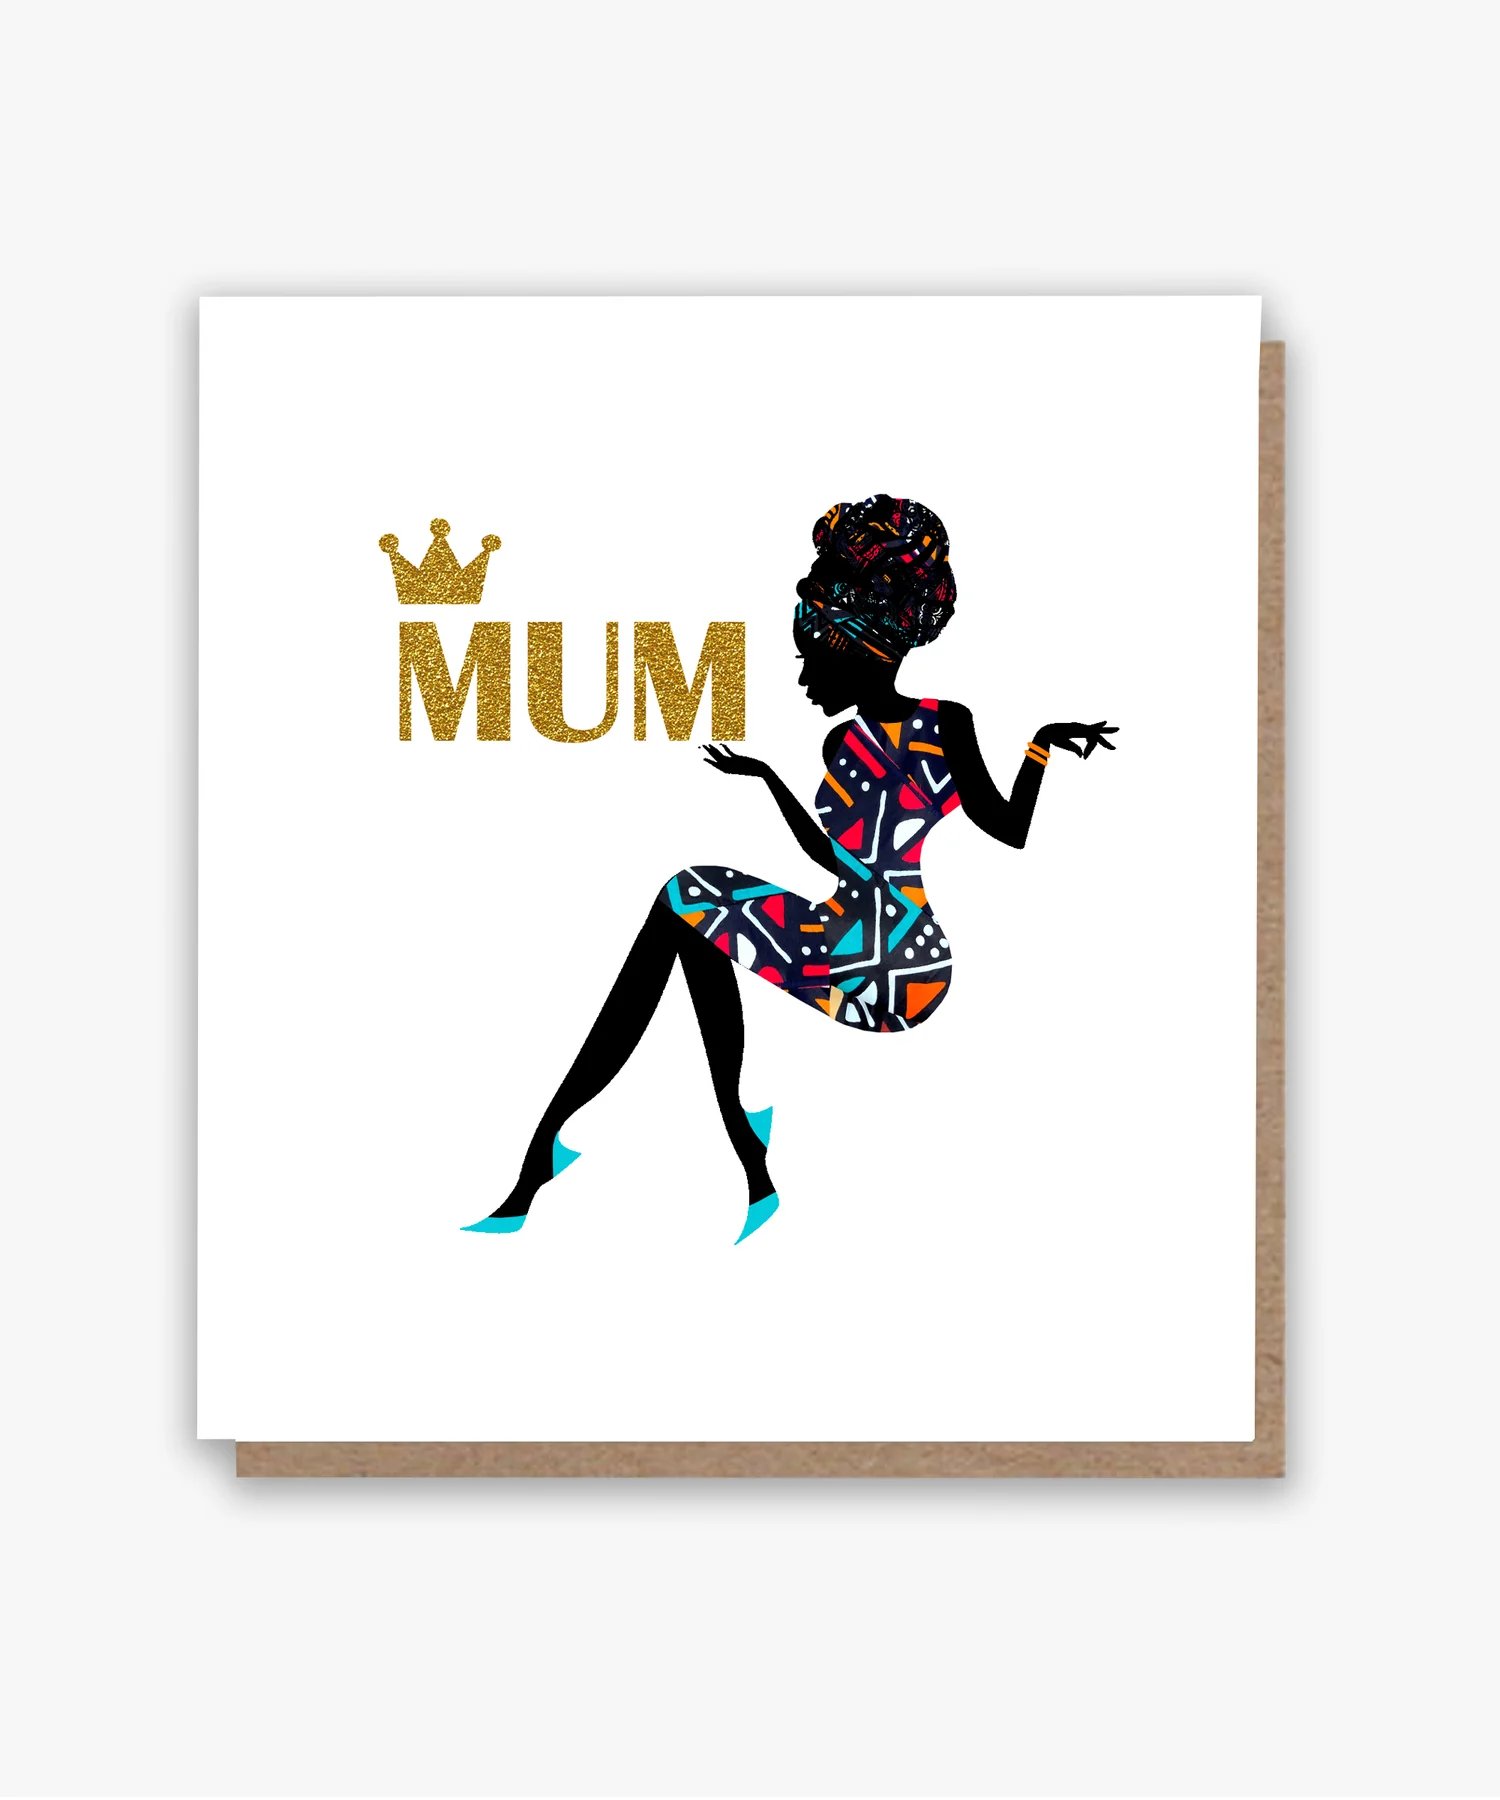 Beautiful Mum! Card